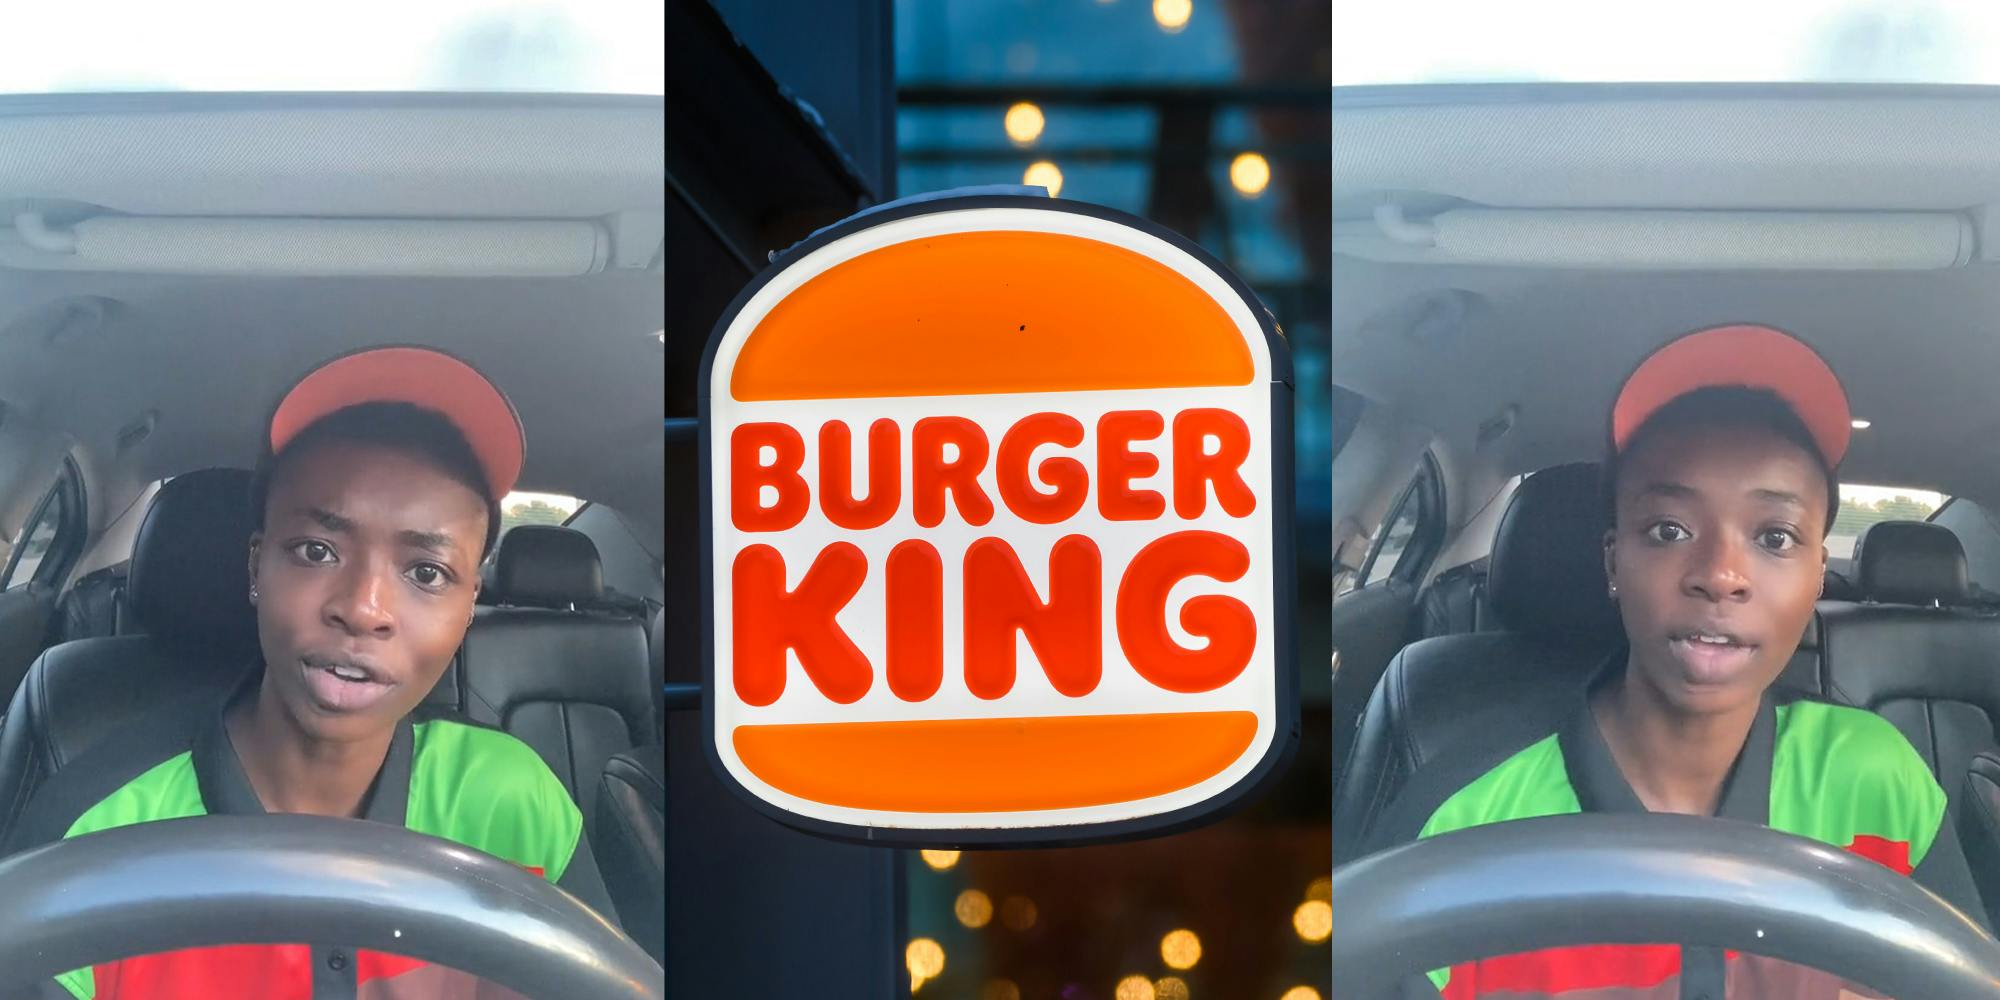 Black woman wearing burger king uniform inside of vehicle; Burger King Logo Sign